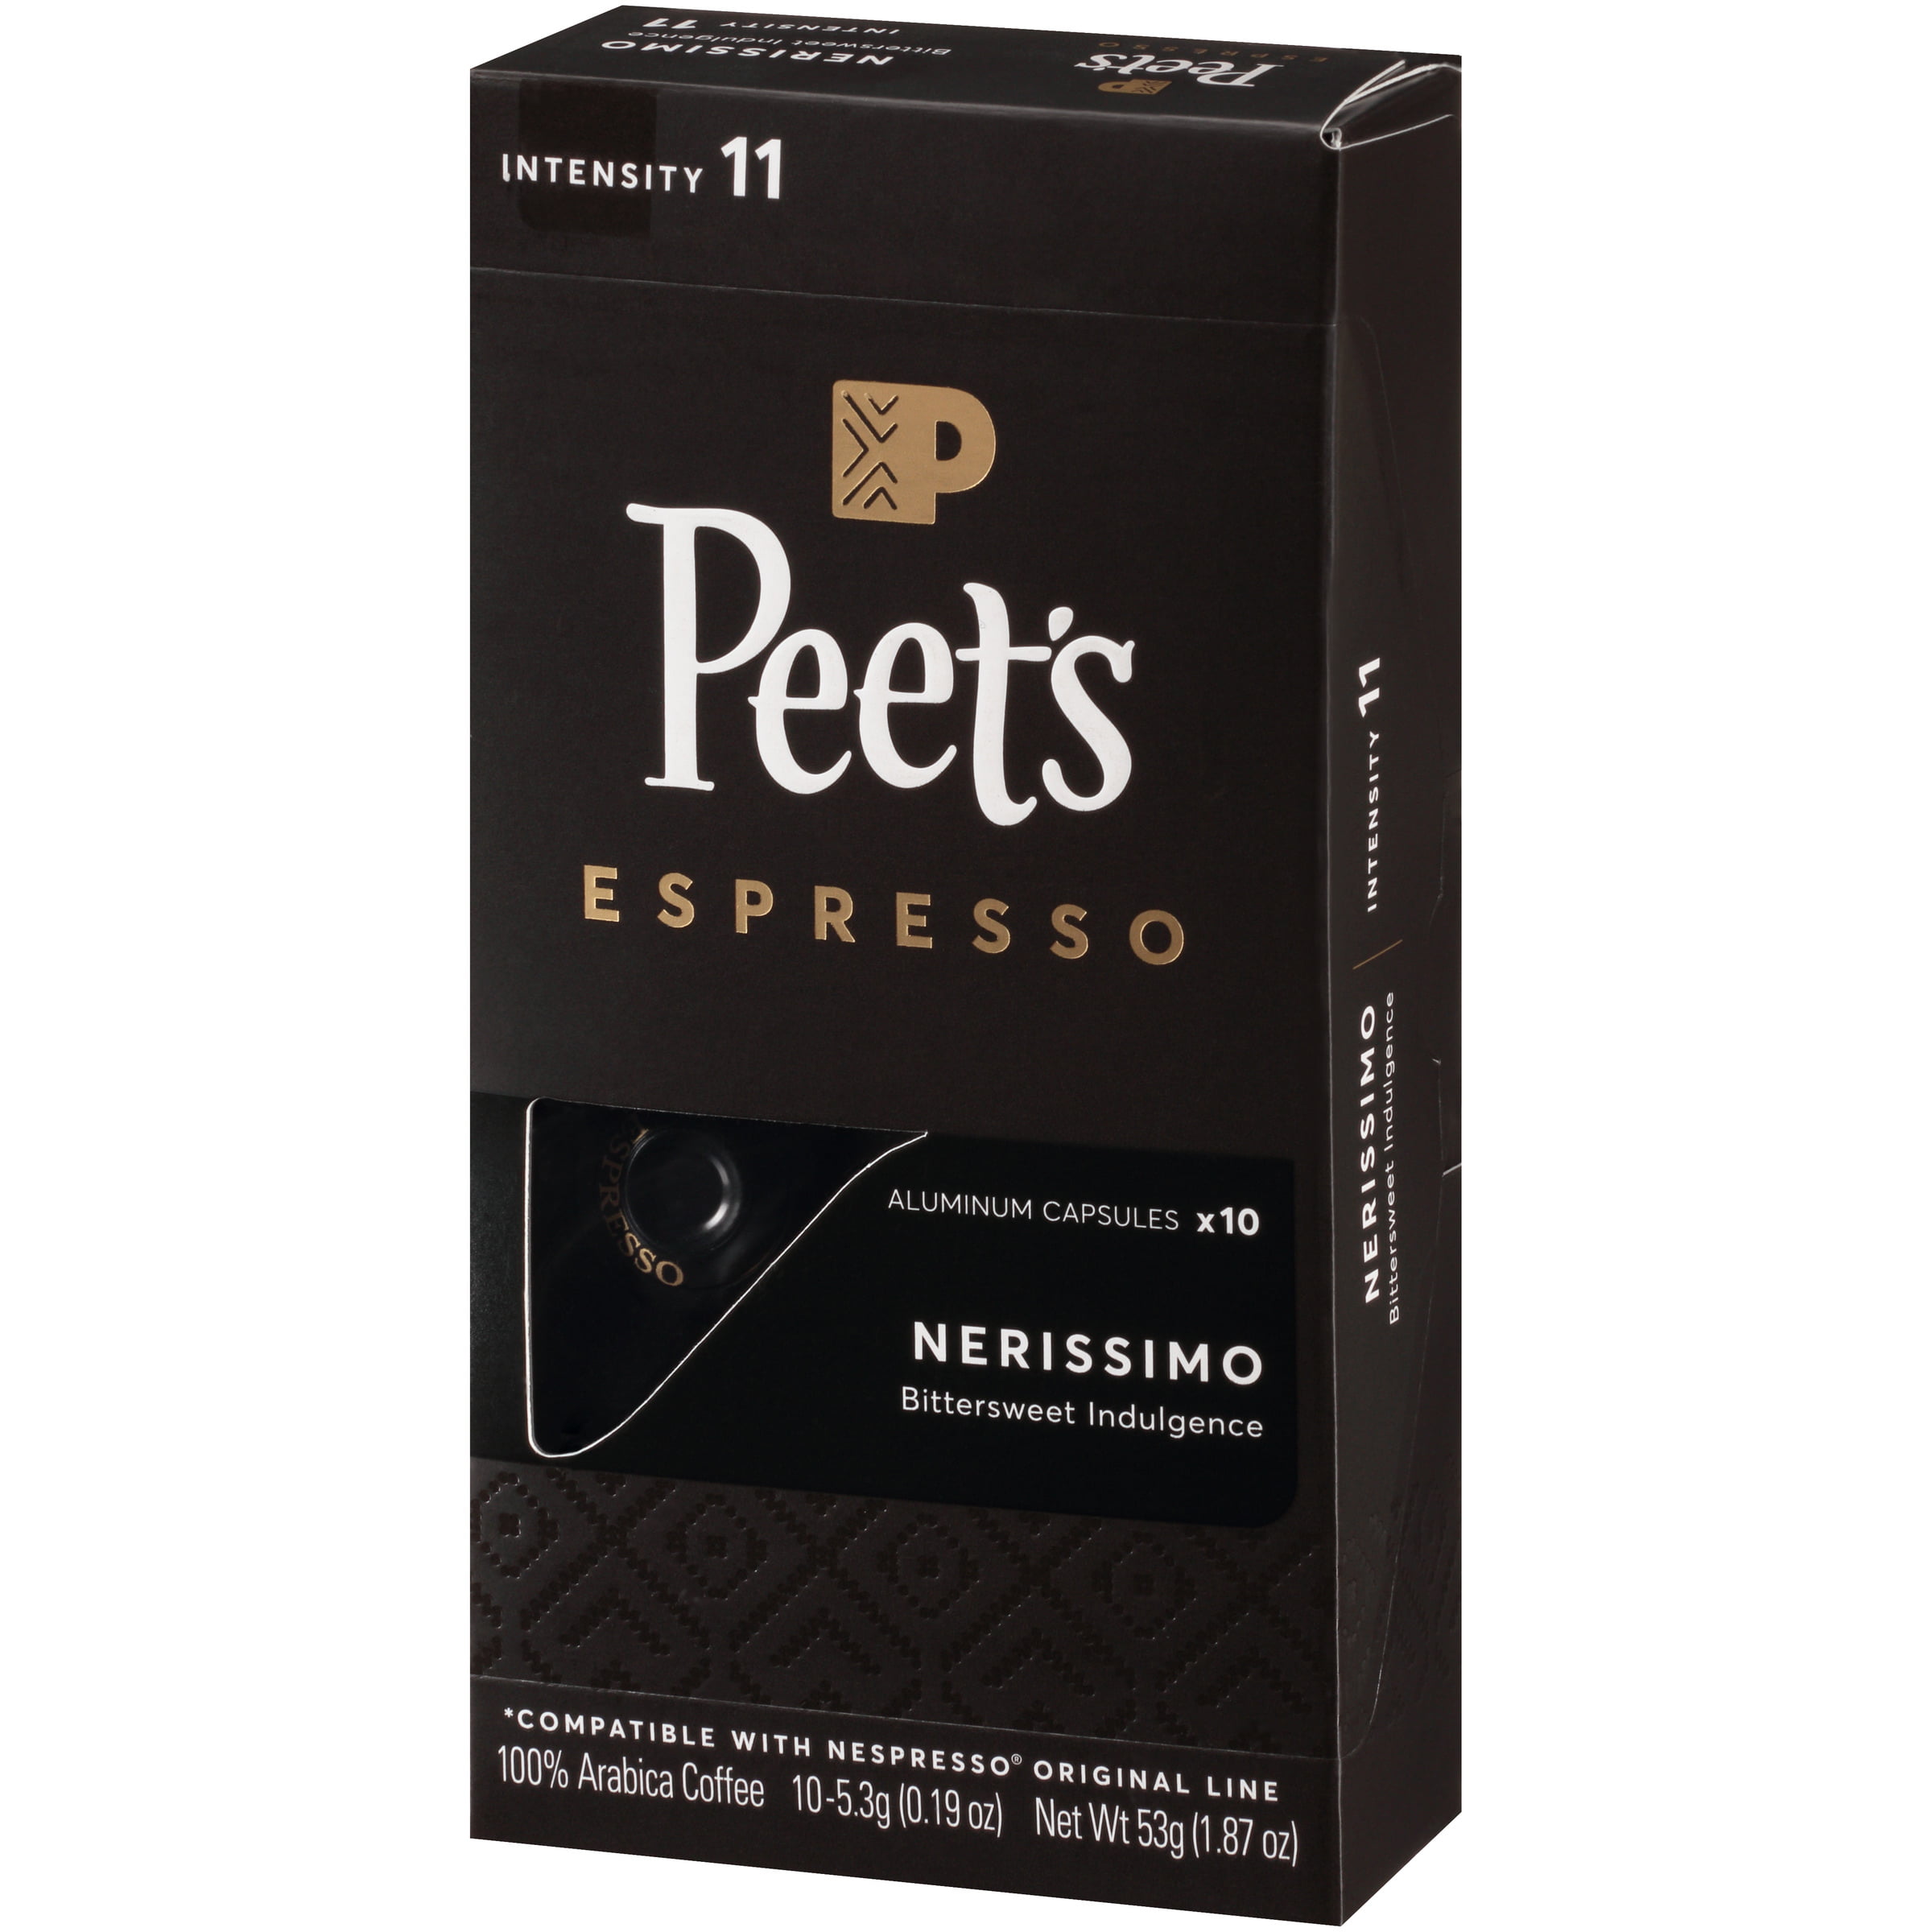 Photo 1 of 10 PACK Peet's Espresso Nerissimo Dark Roast Aluminum Capsules - 10ct/1.87oz 